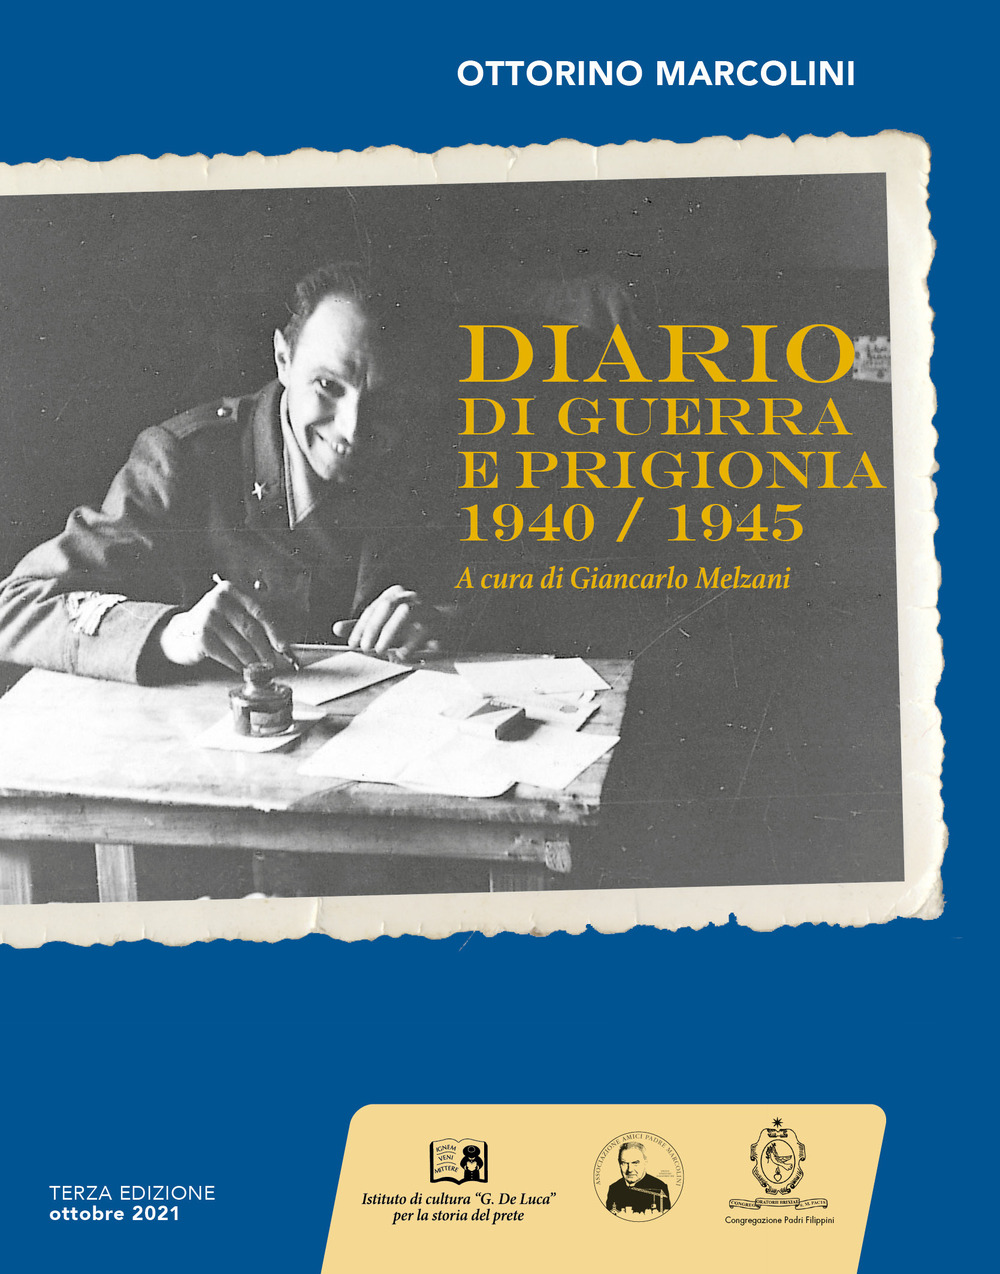 Ottorino Marcolini. Diario di guerra e prigionia 1940-1945